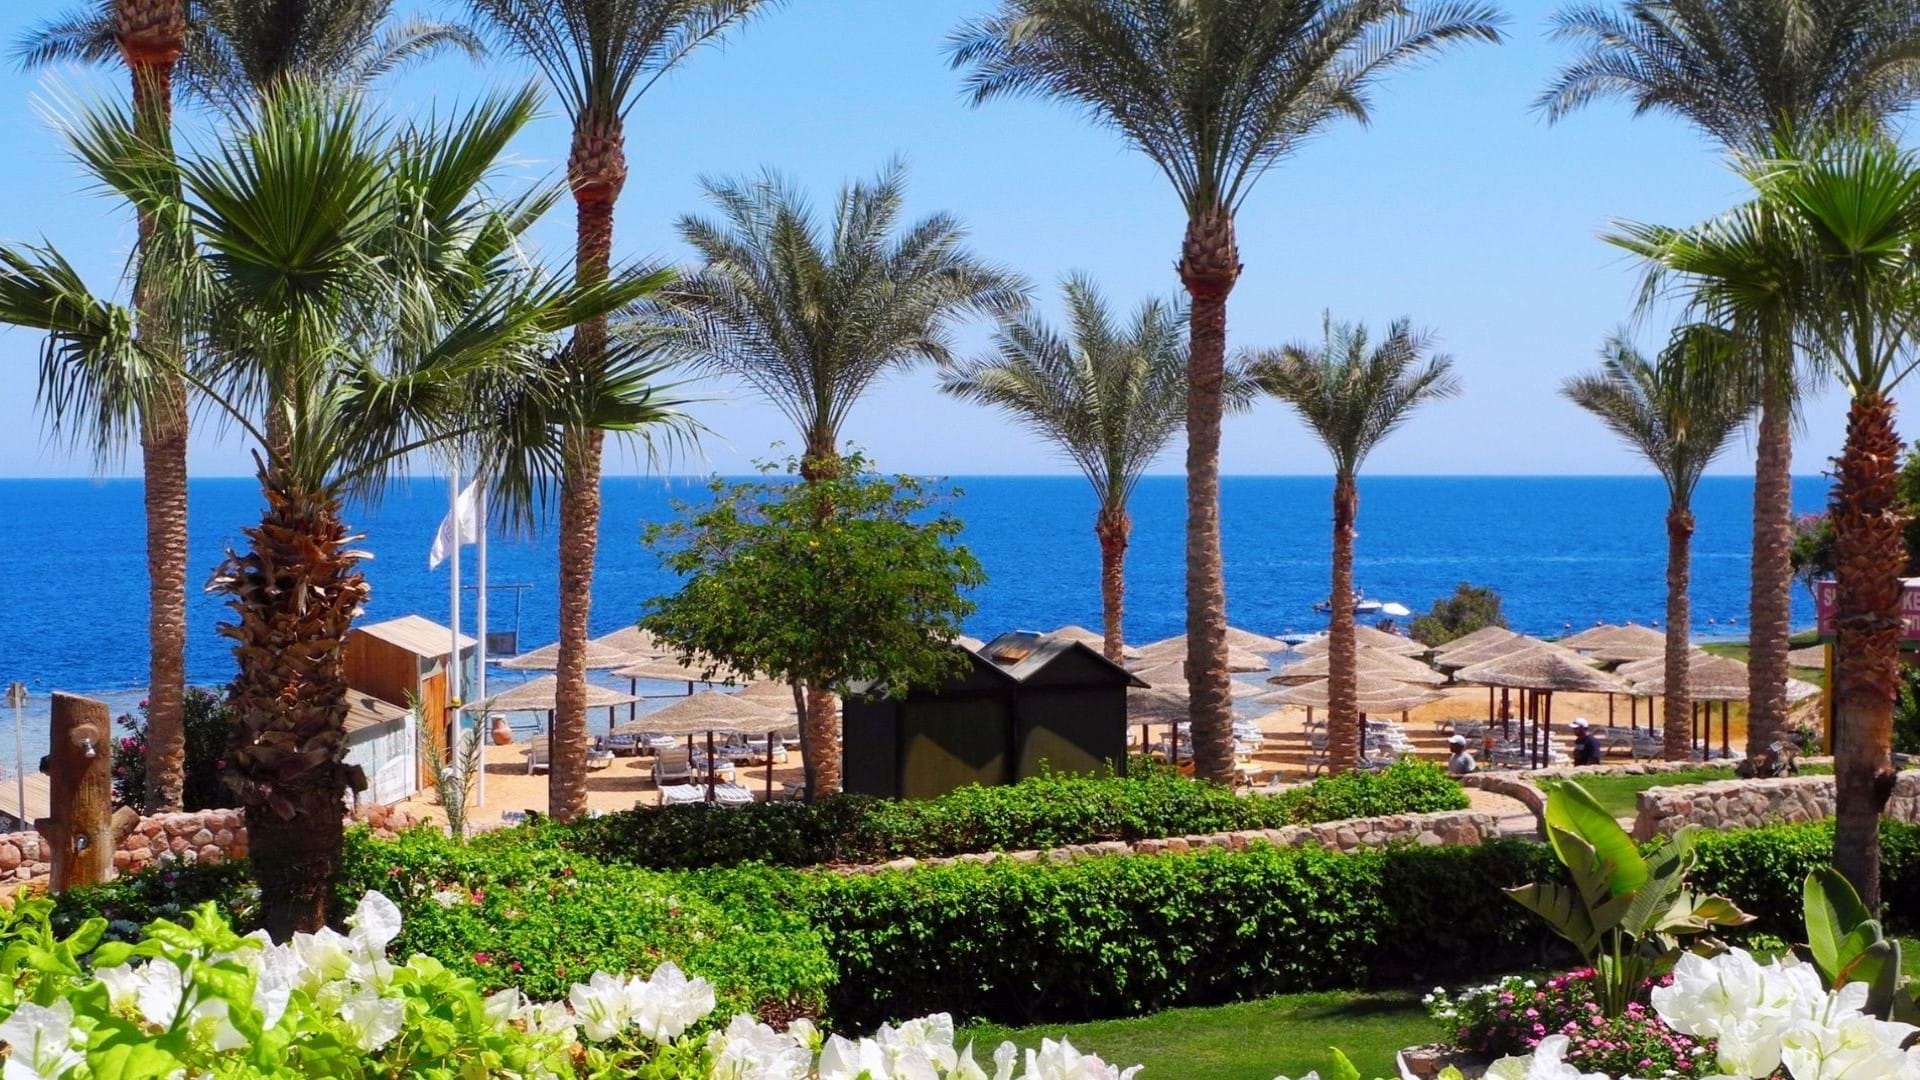 Hotelska plaža sa uređenim delom za ležaljke jednog od hotela u Šarm El Šeik u